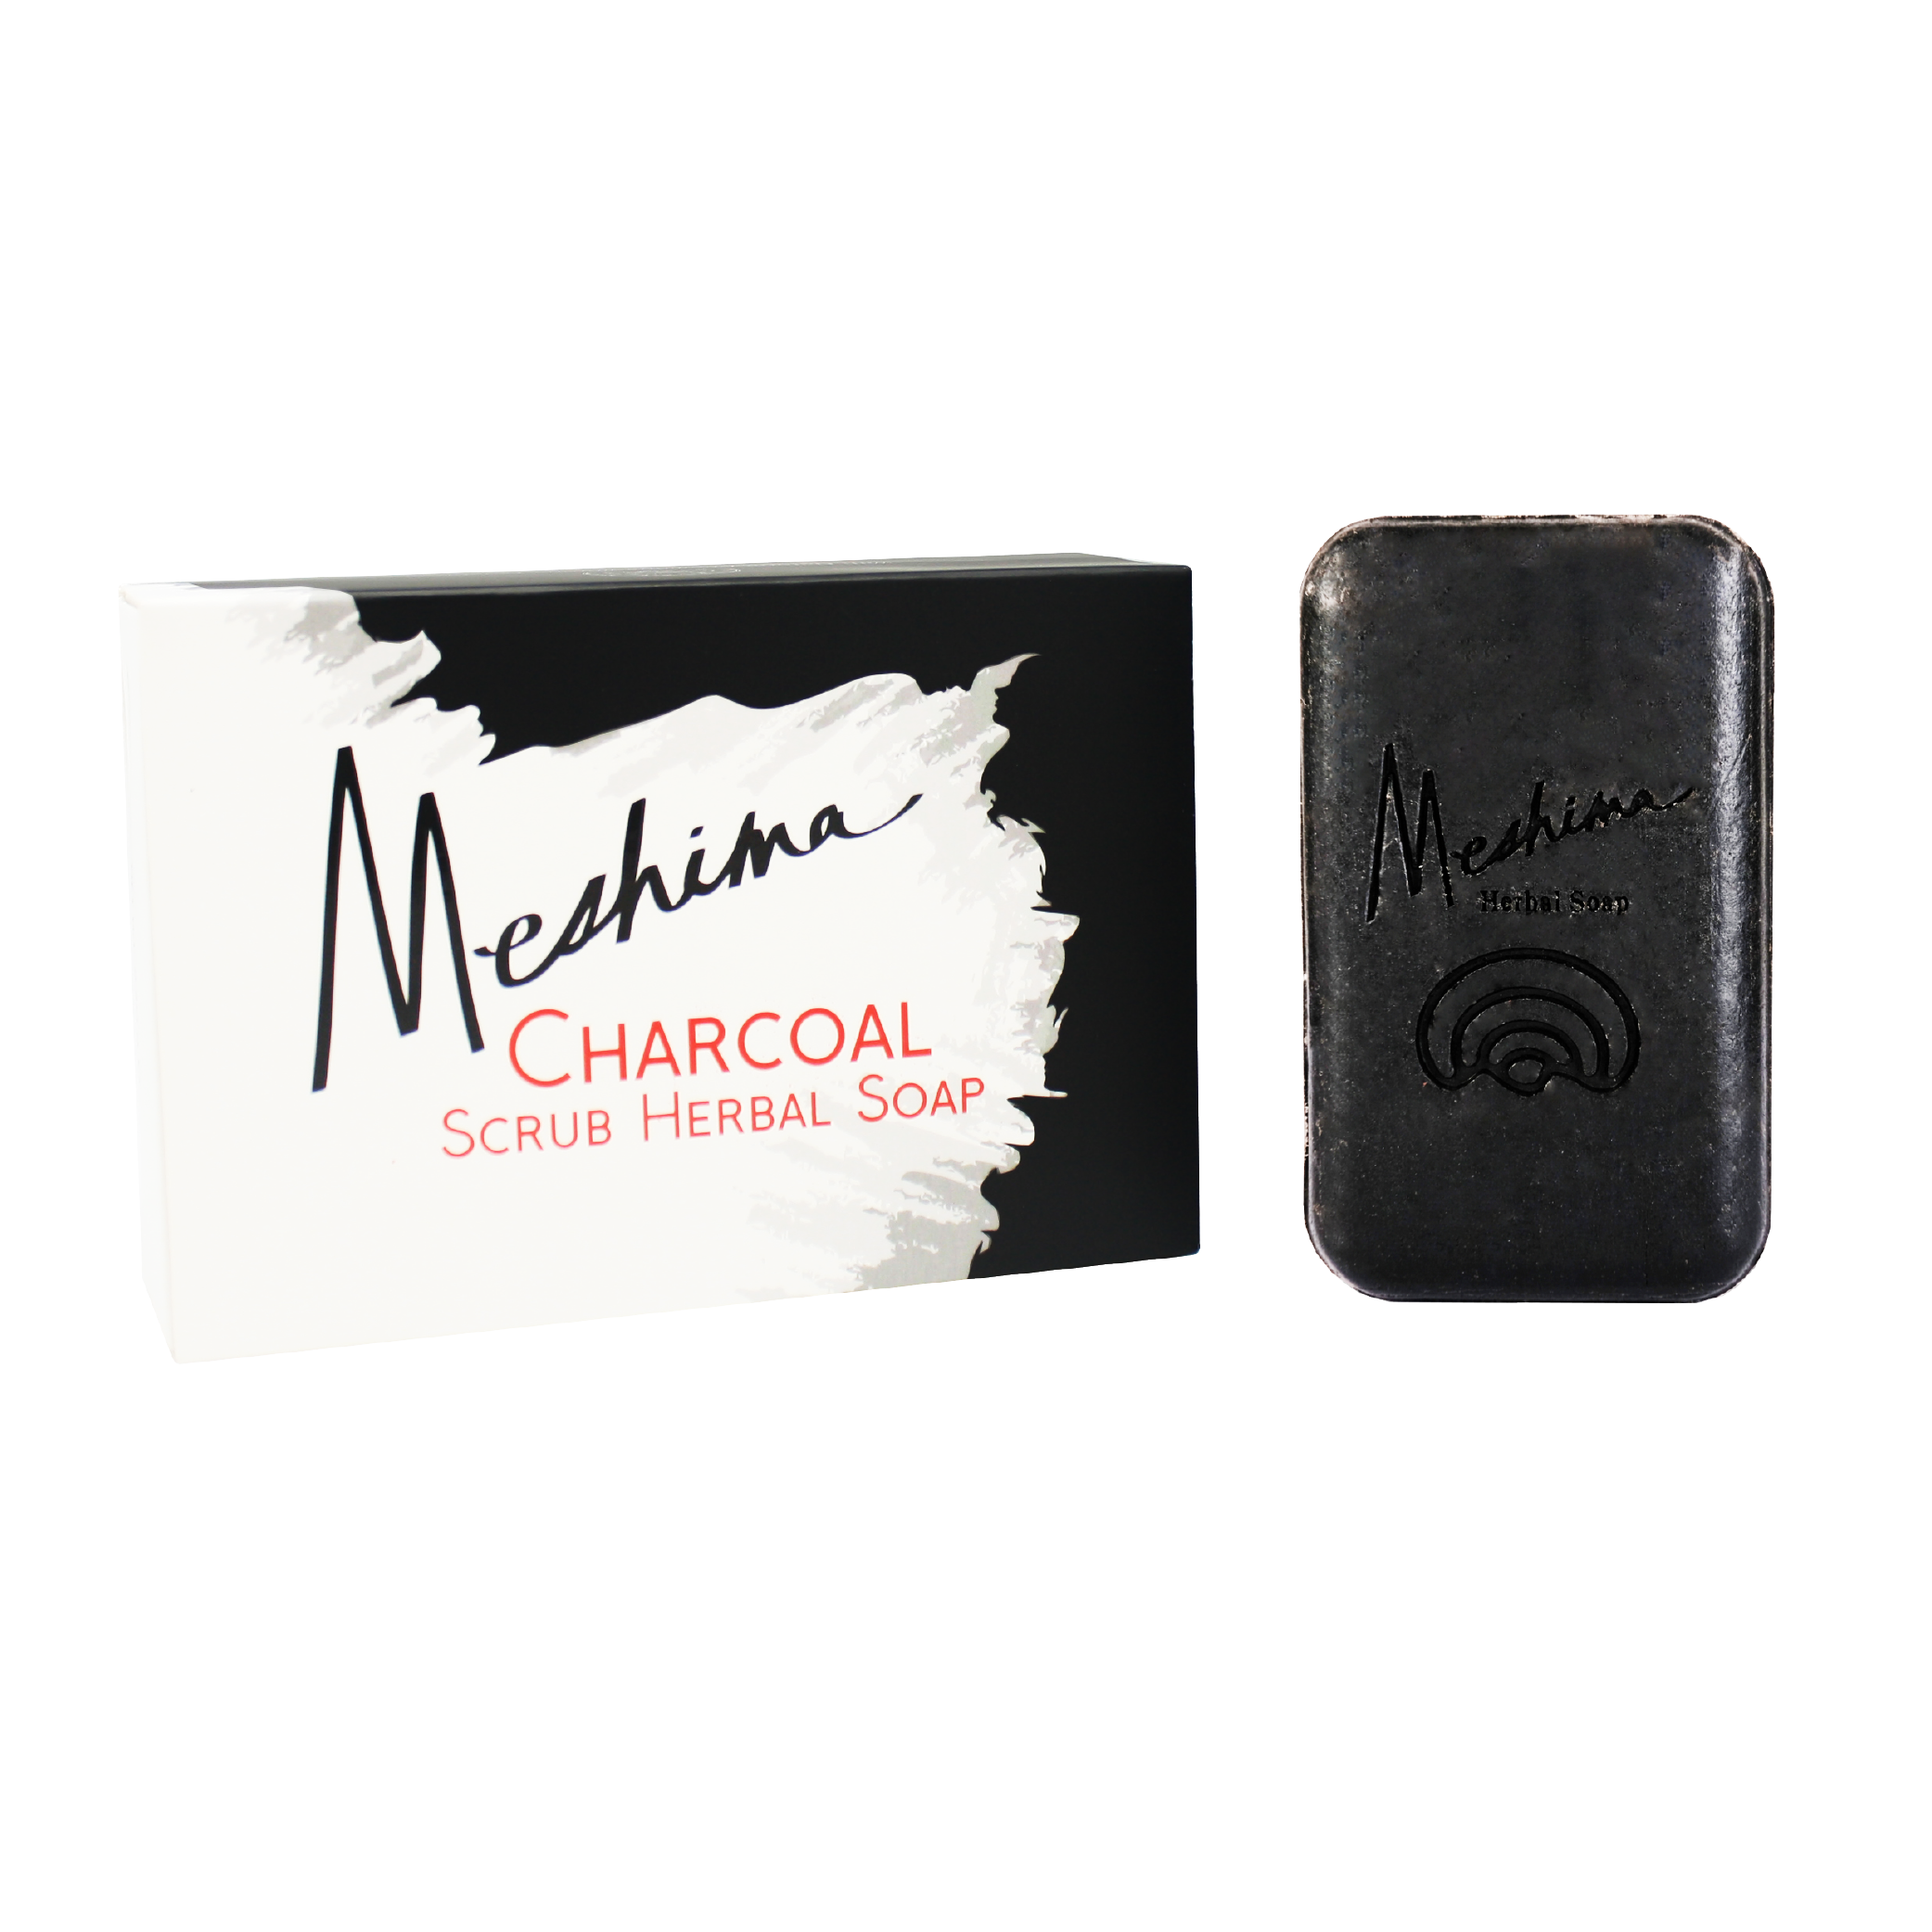 Meshima Charcoal Scrub Herbal Soap